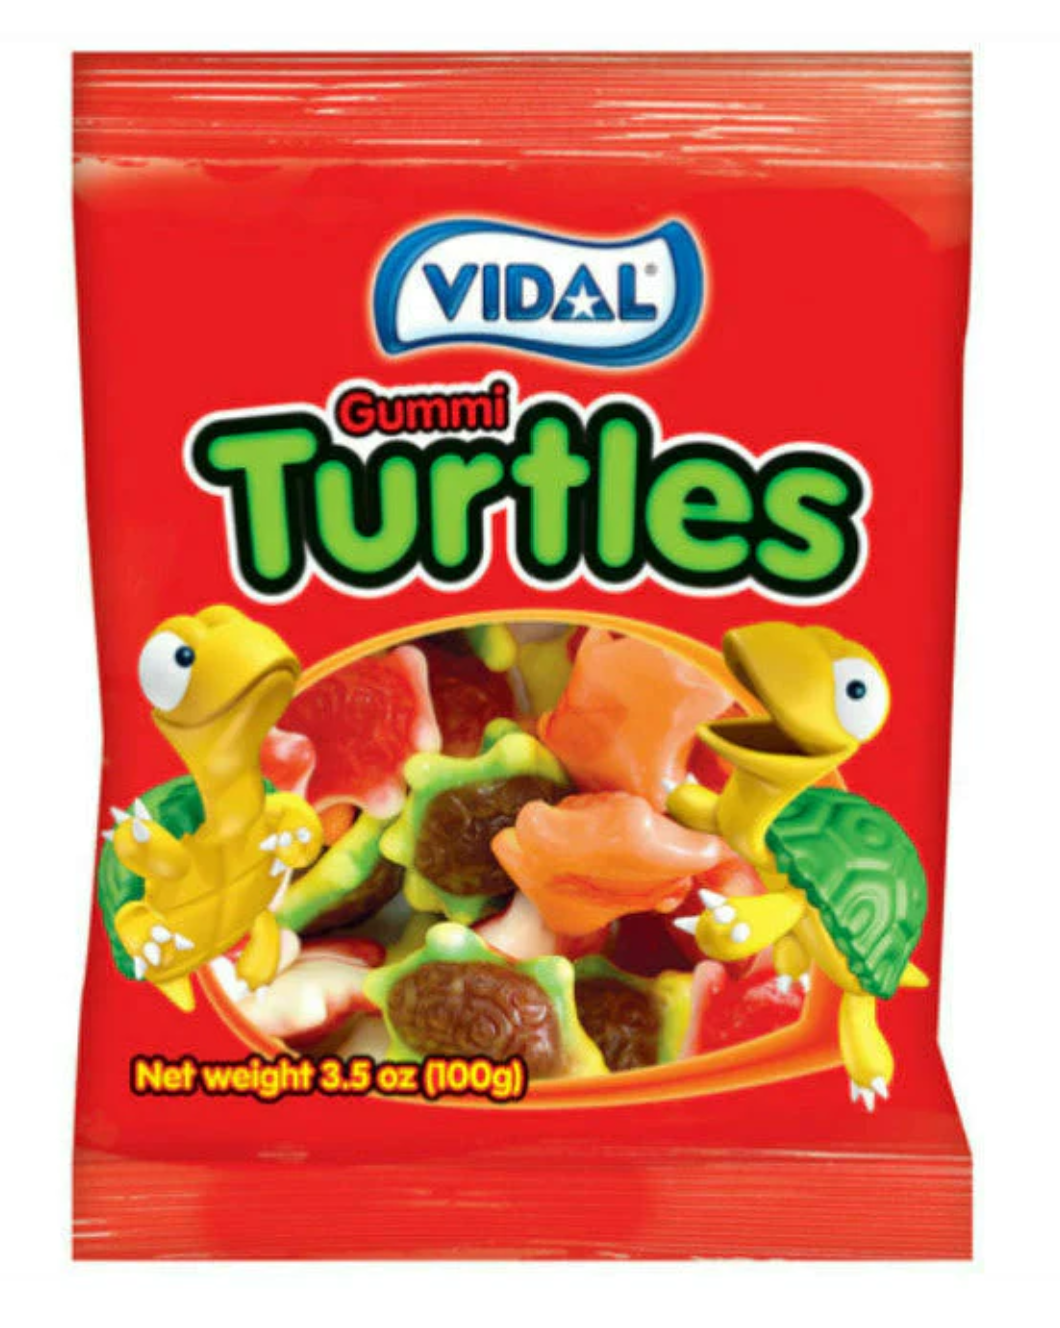 Vidal Gummi Turtles